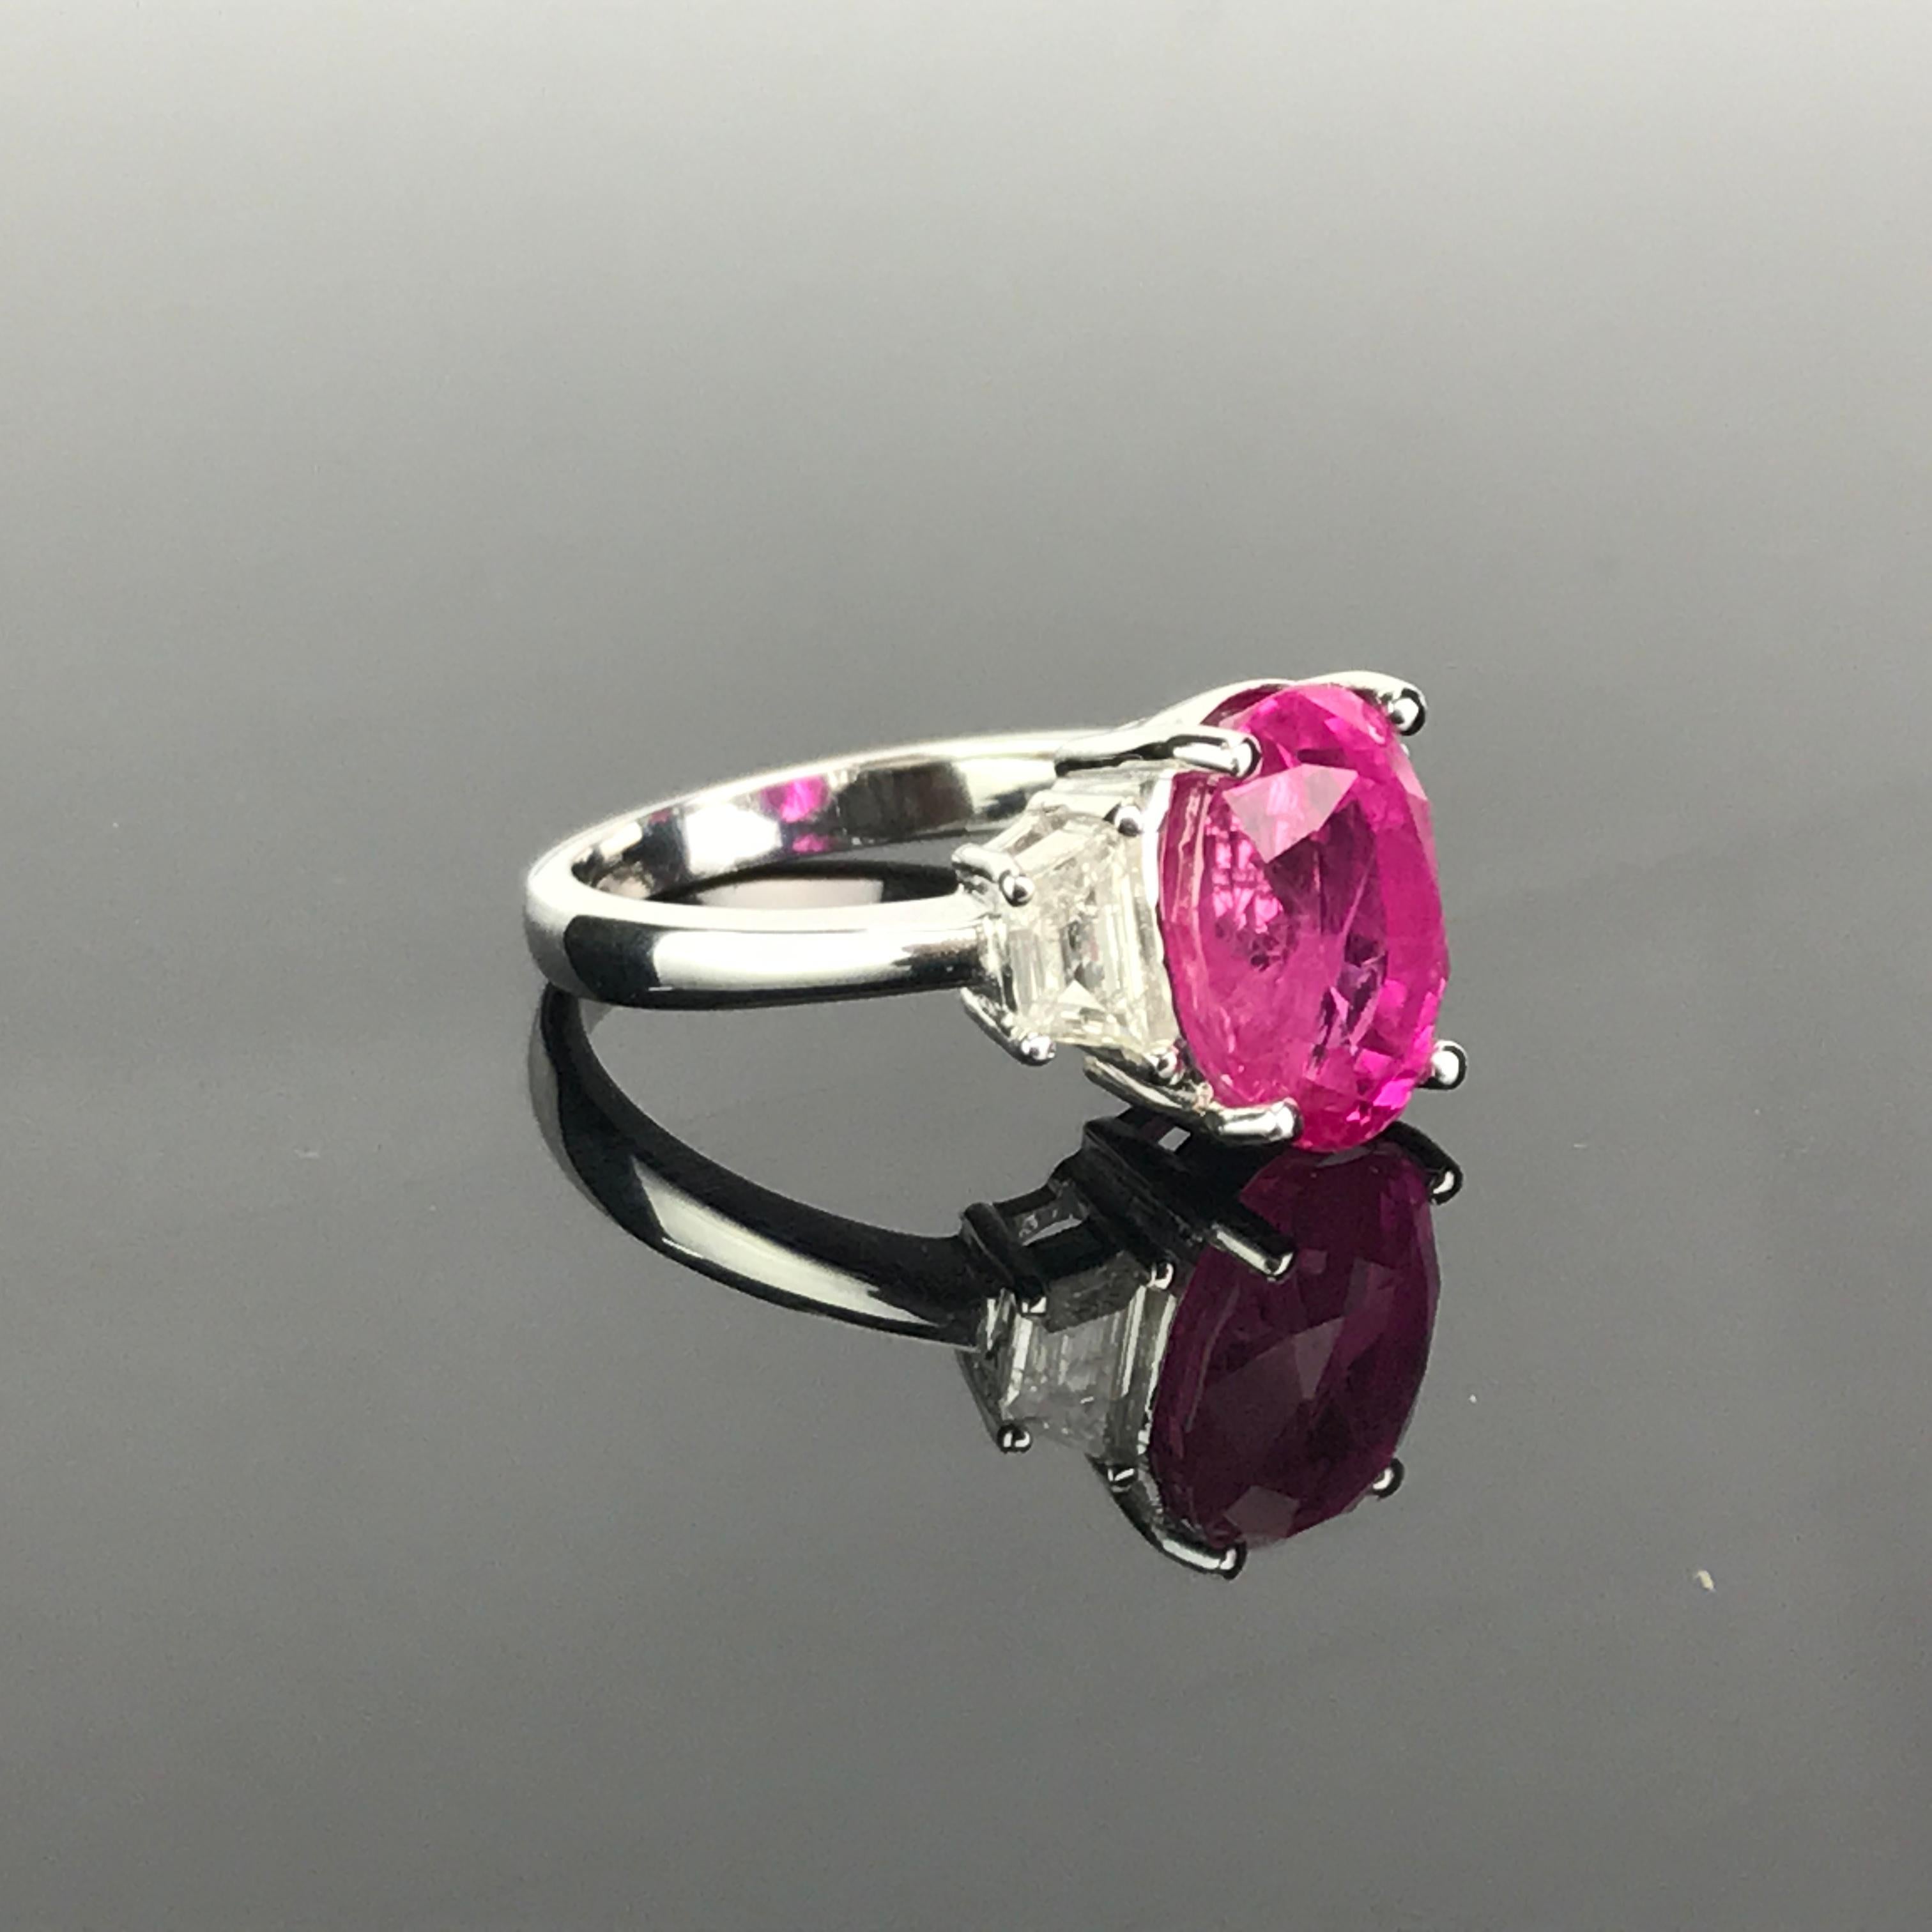 Bague de fiançailles classique à trois pierres en rubis birman et diamants de 6,23 carats. Ce rubis naturel a une belle couleur rosée et un grand éclat. Les trapèzes de diamants de qualité VS et de couleur H totalisent 0,44 carats. Le tout serti